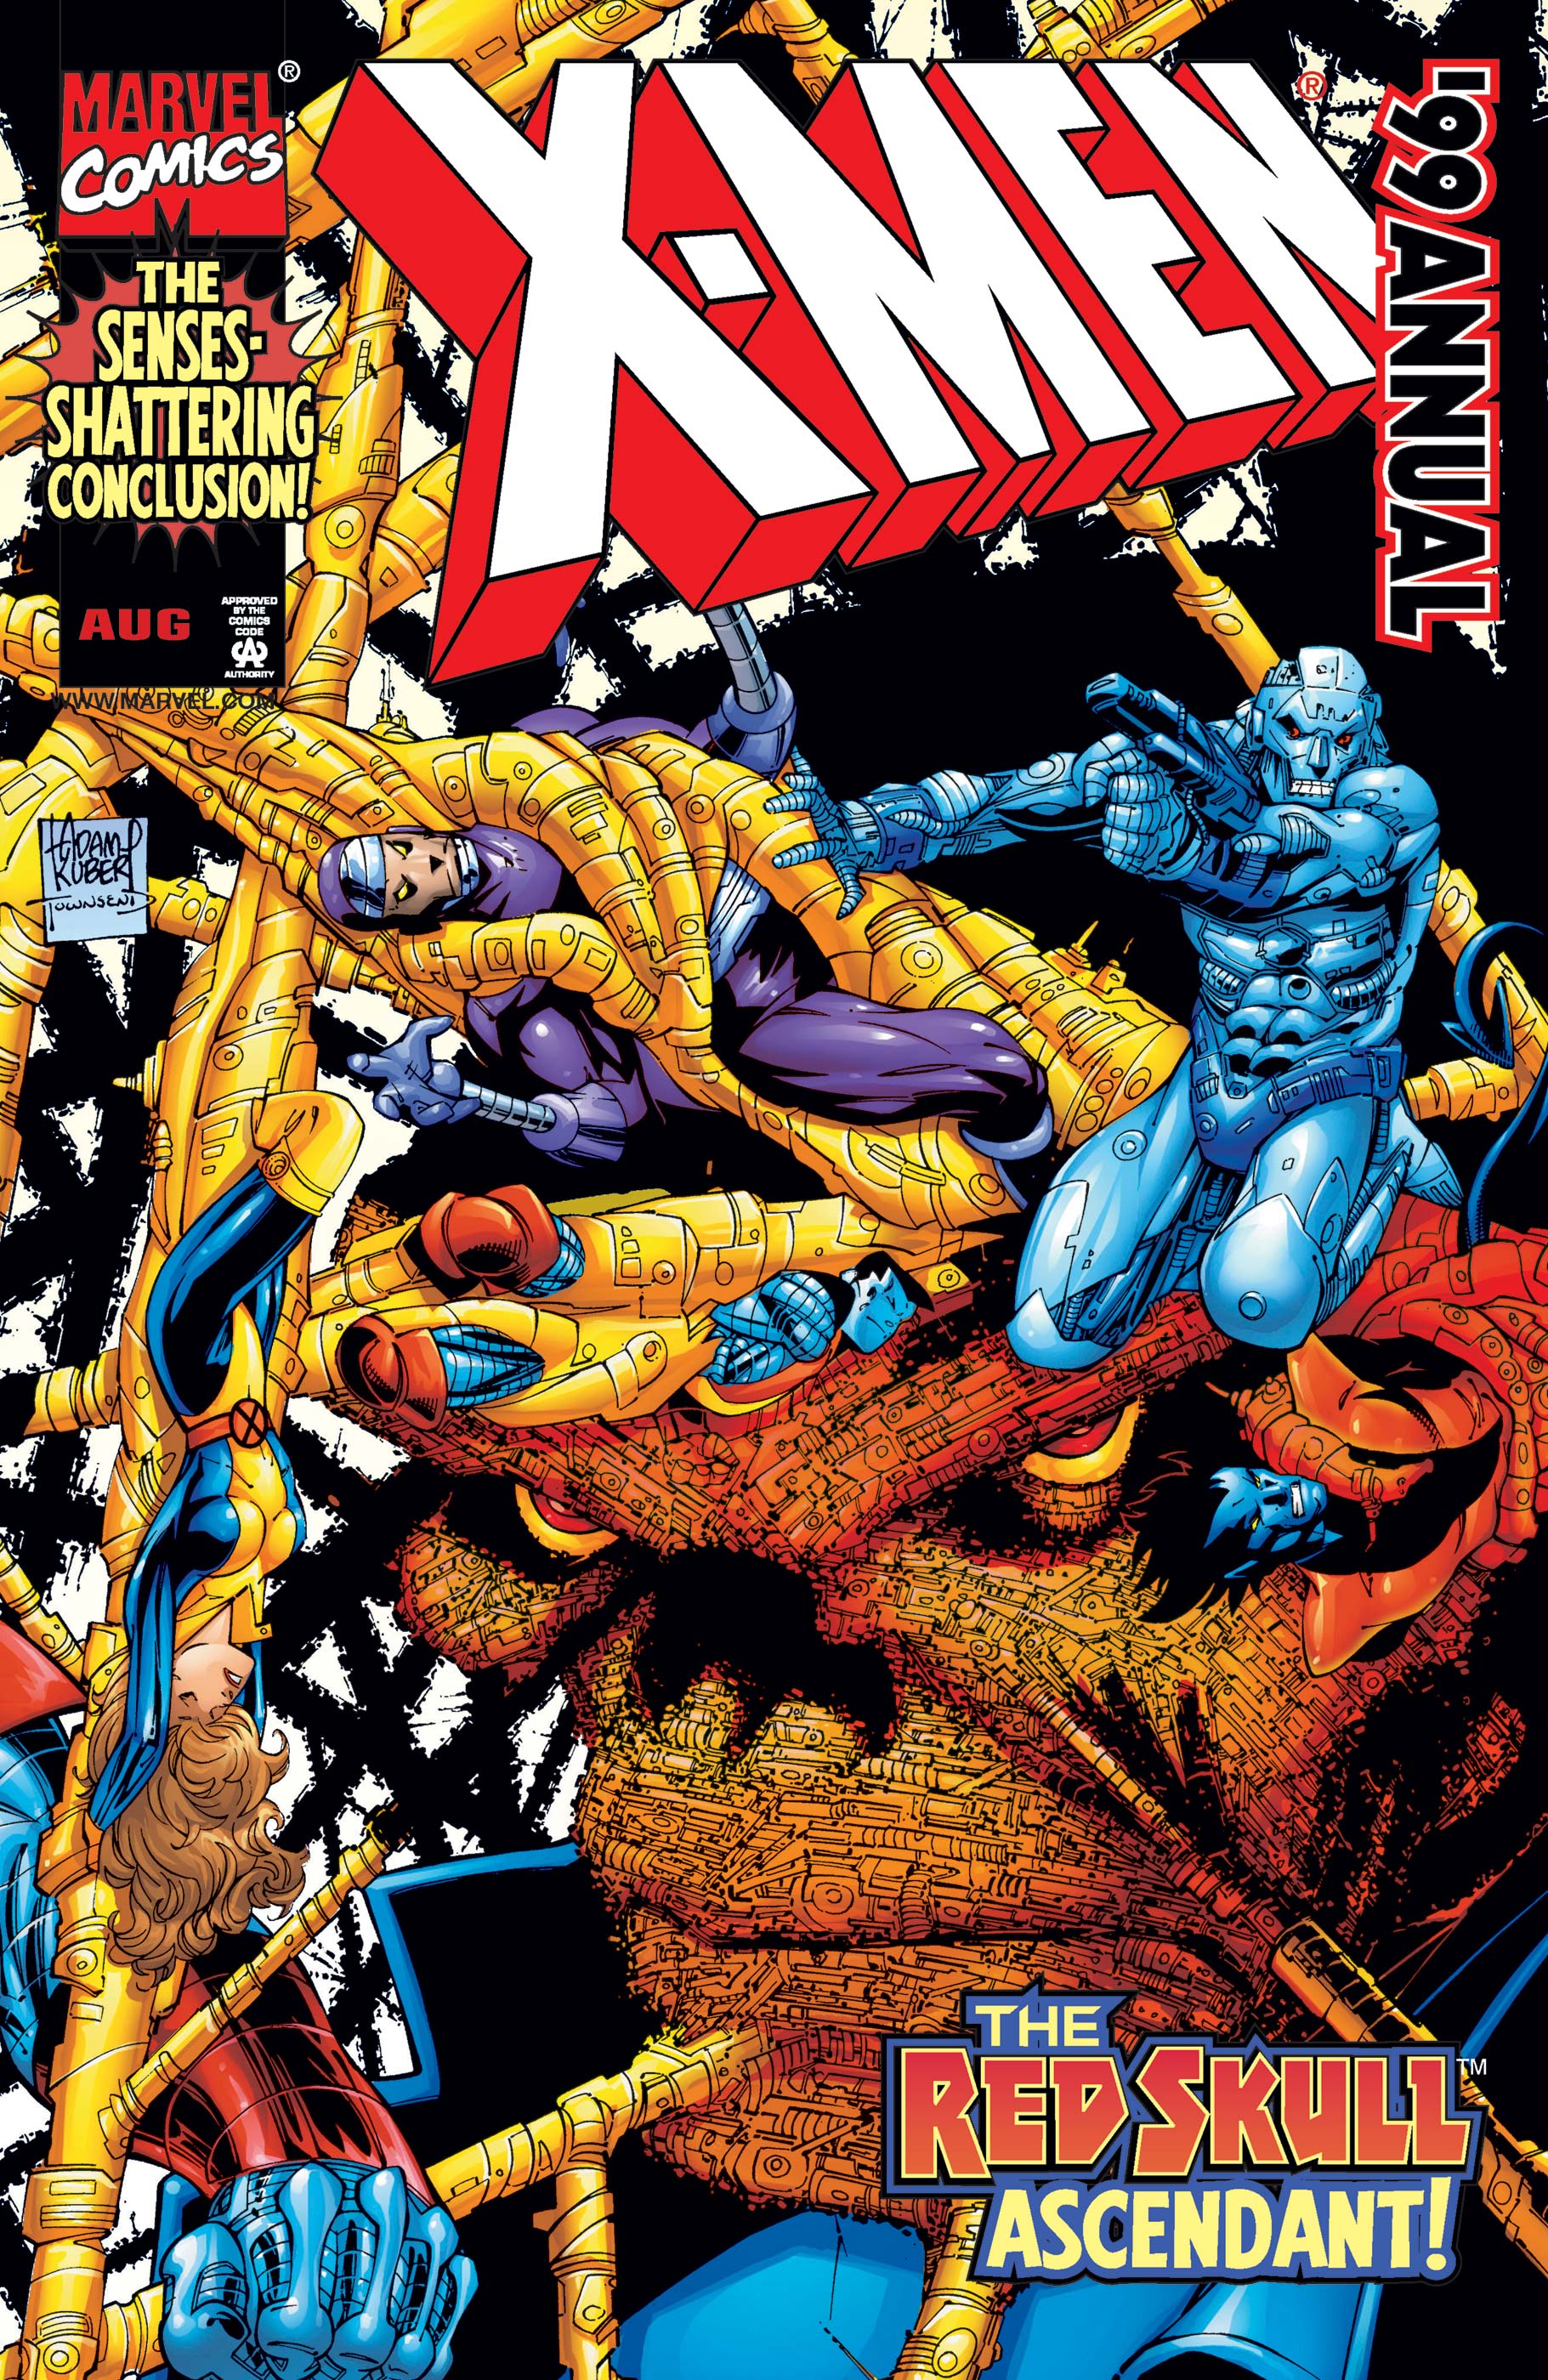 X-Men Annual (1999) #1